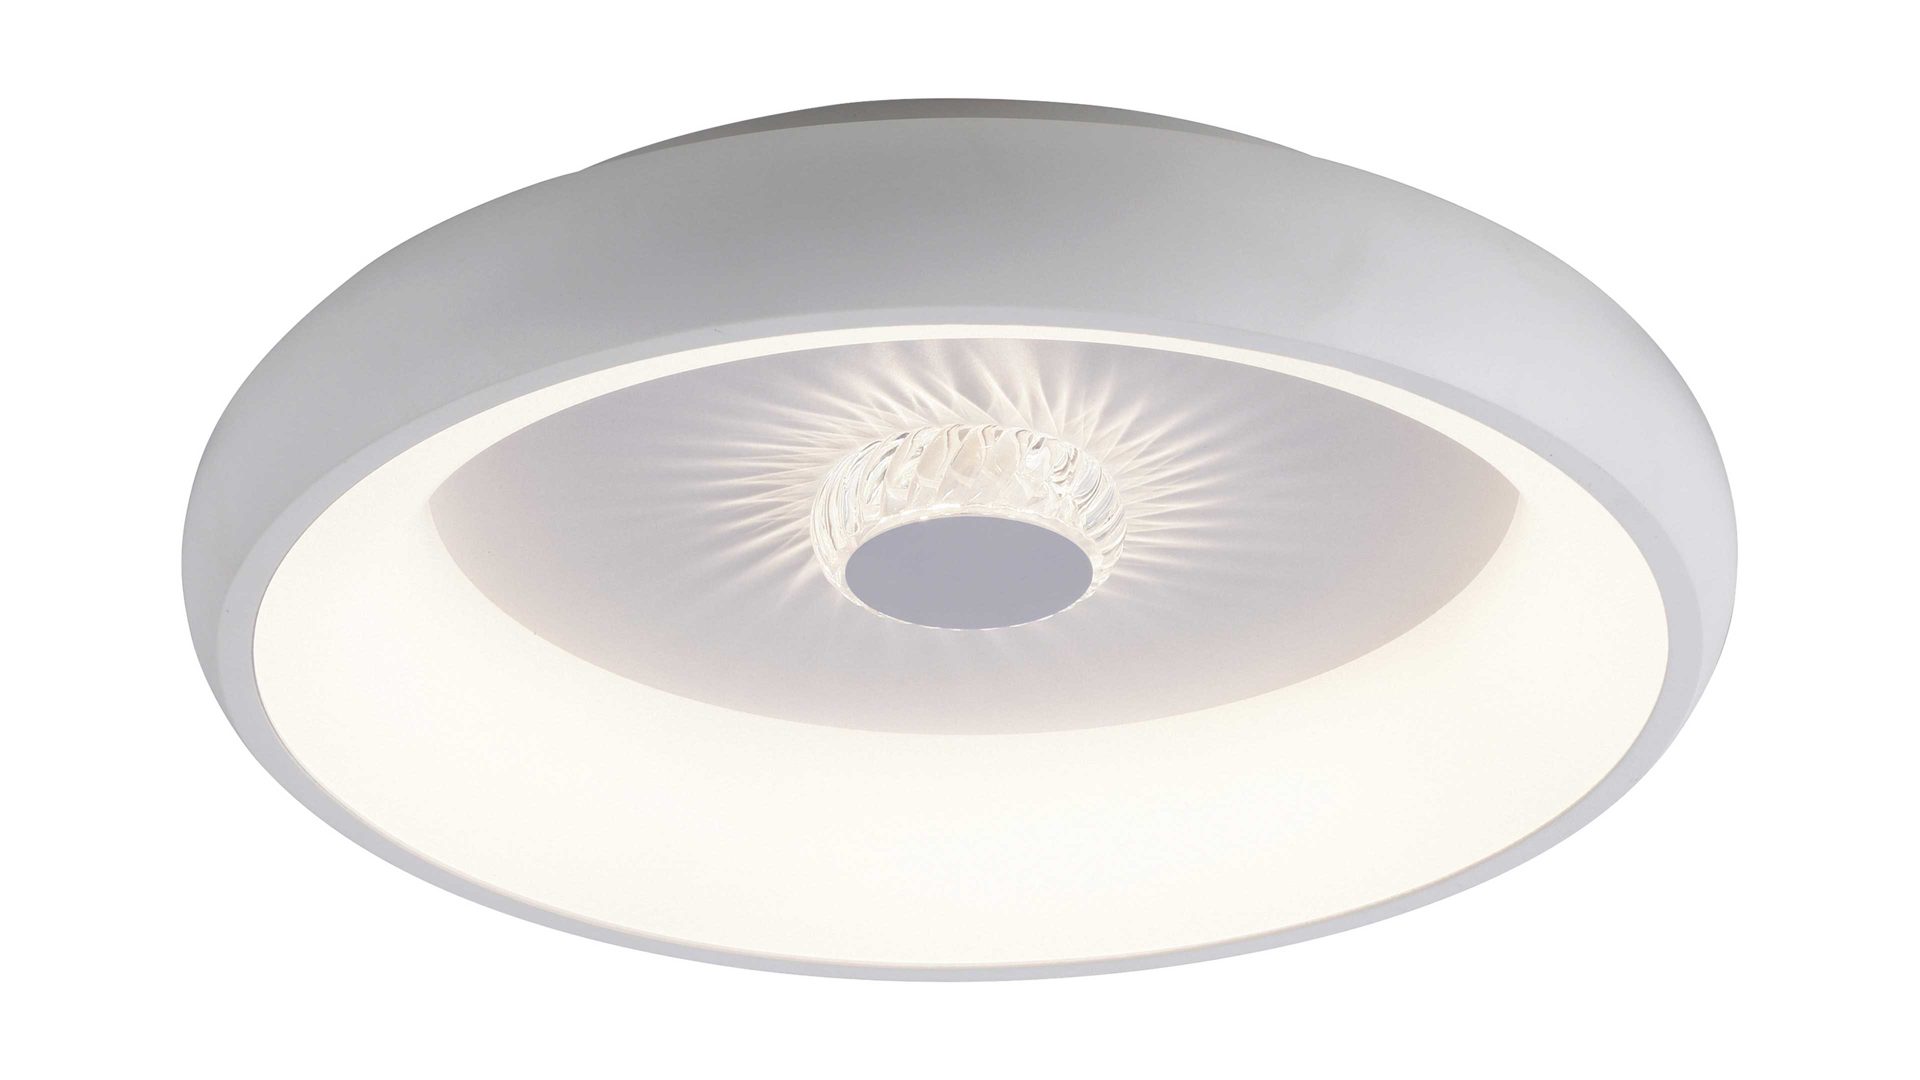 Deckenleuchte Leuchtendirekt aus Metall in Weiß LeuchtenDirekt Leuchten Serie Vertigo weißes Metall & Acryl - Durchmesser ca. 45 cm